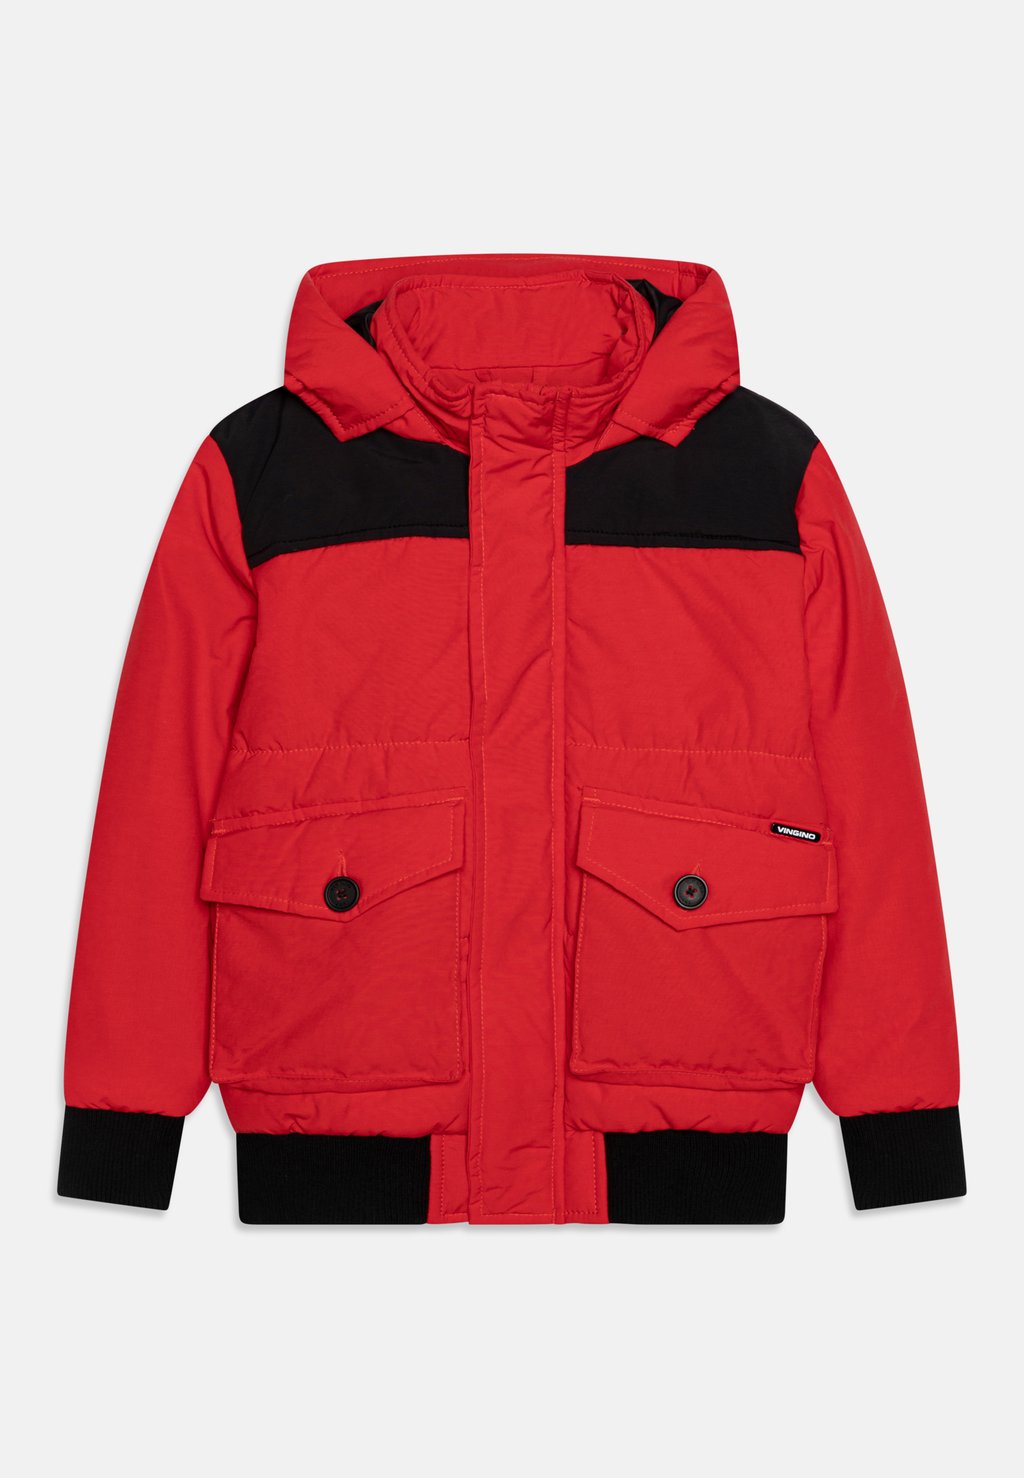 Зимняя куртка TIBBING Vingino, цвет roro red